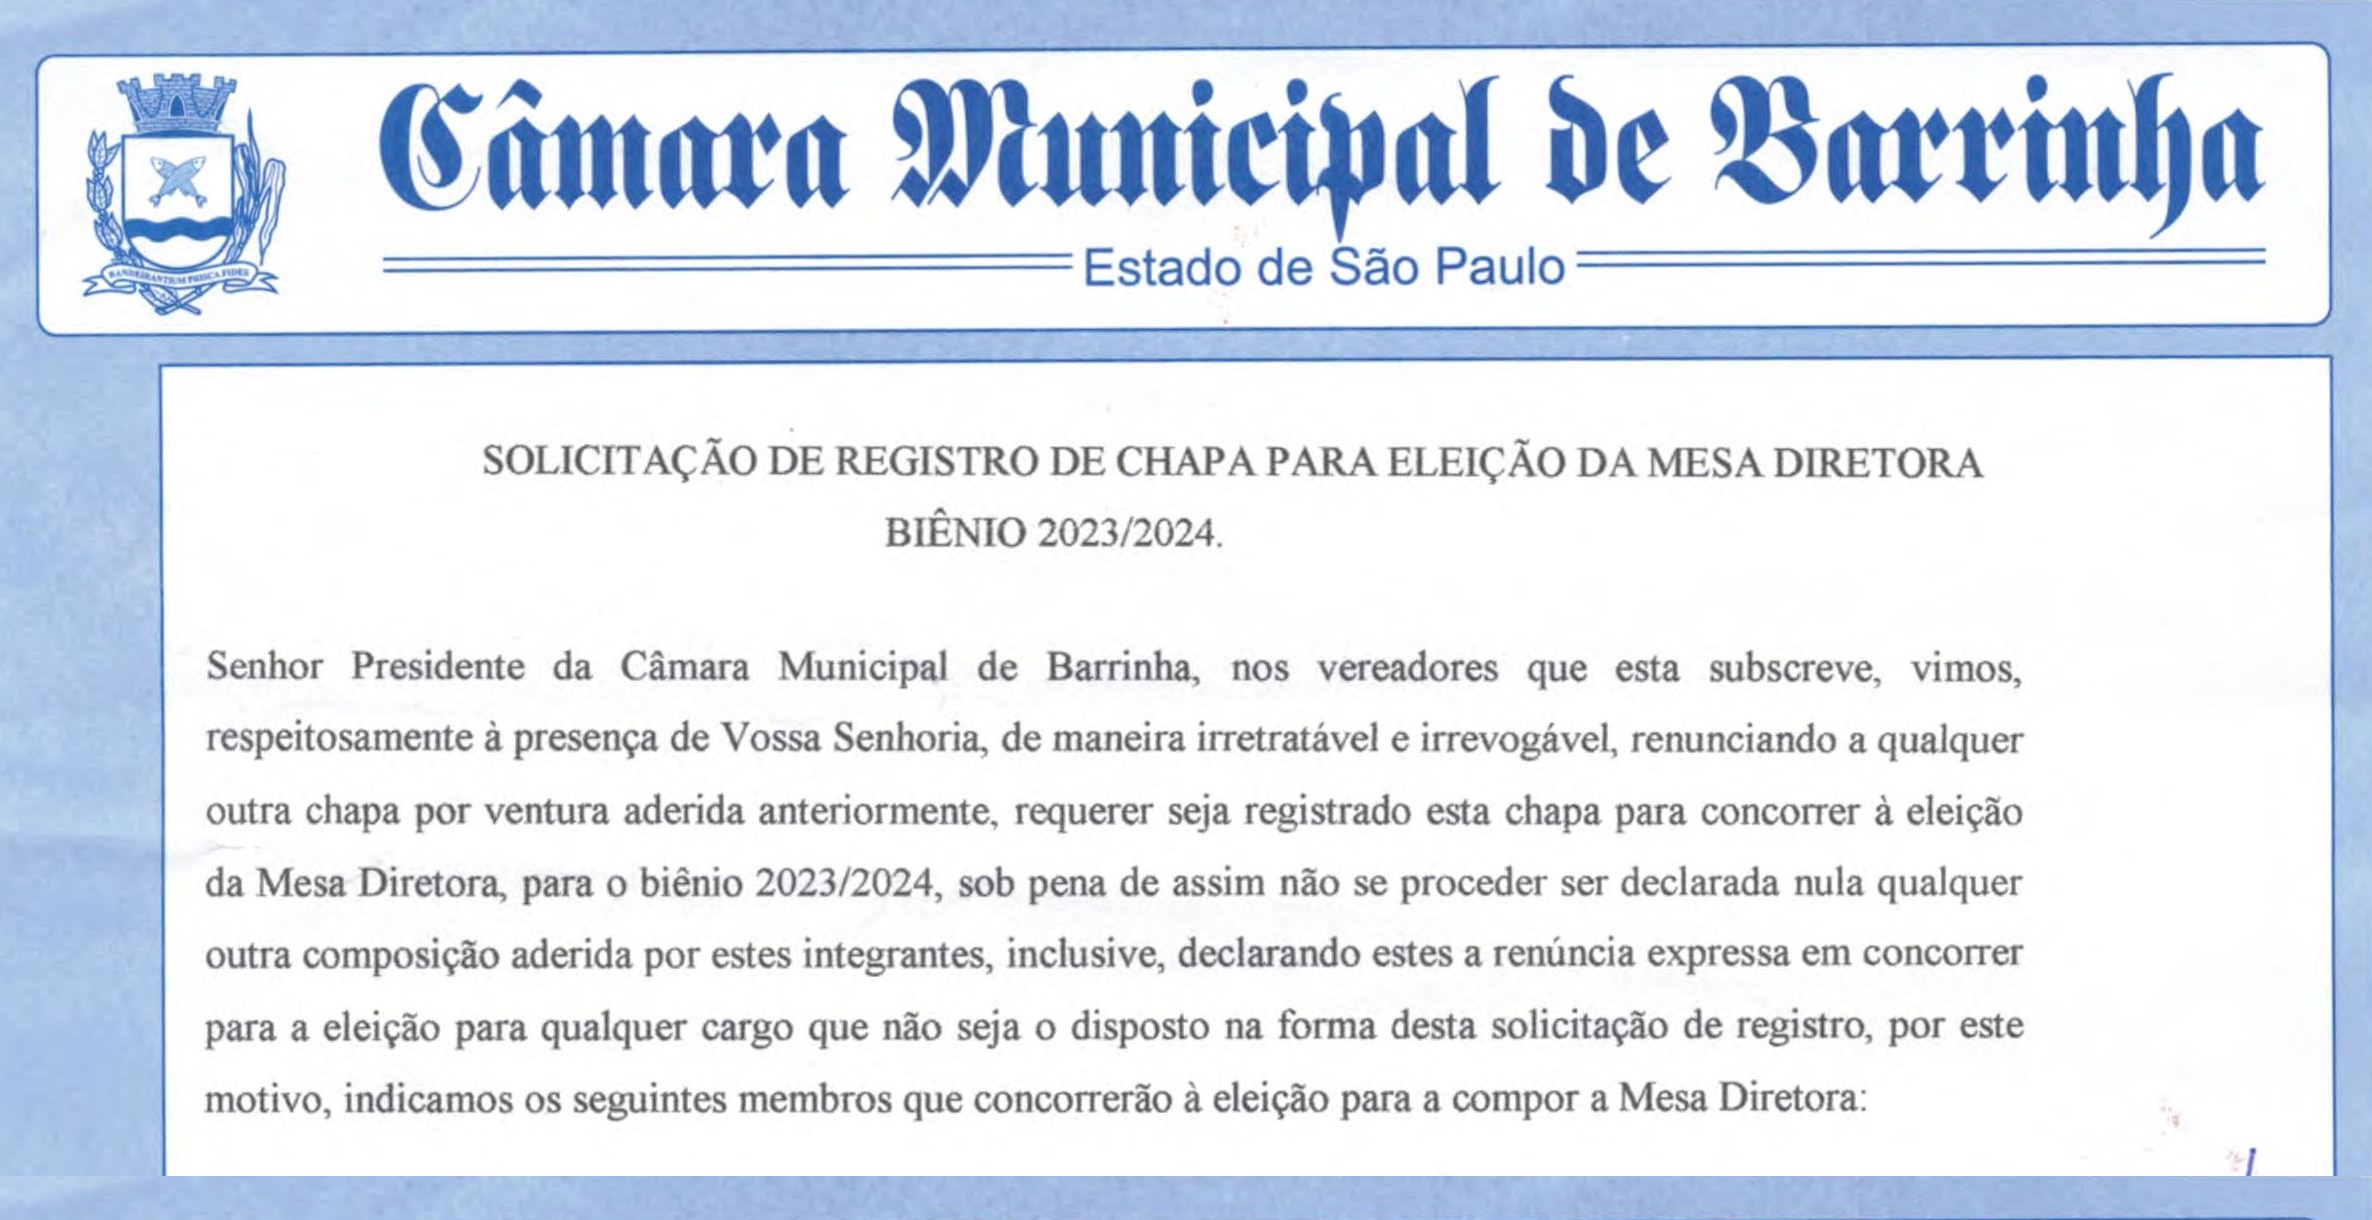 Solicitação de Registro de Chapa para Eleição da Mesa Diretora Biênio 2023/2024.